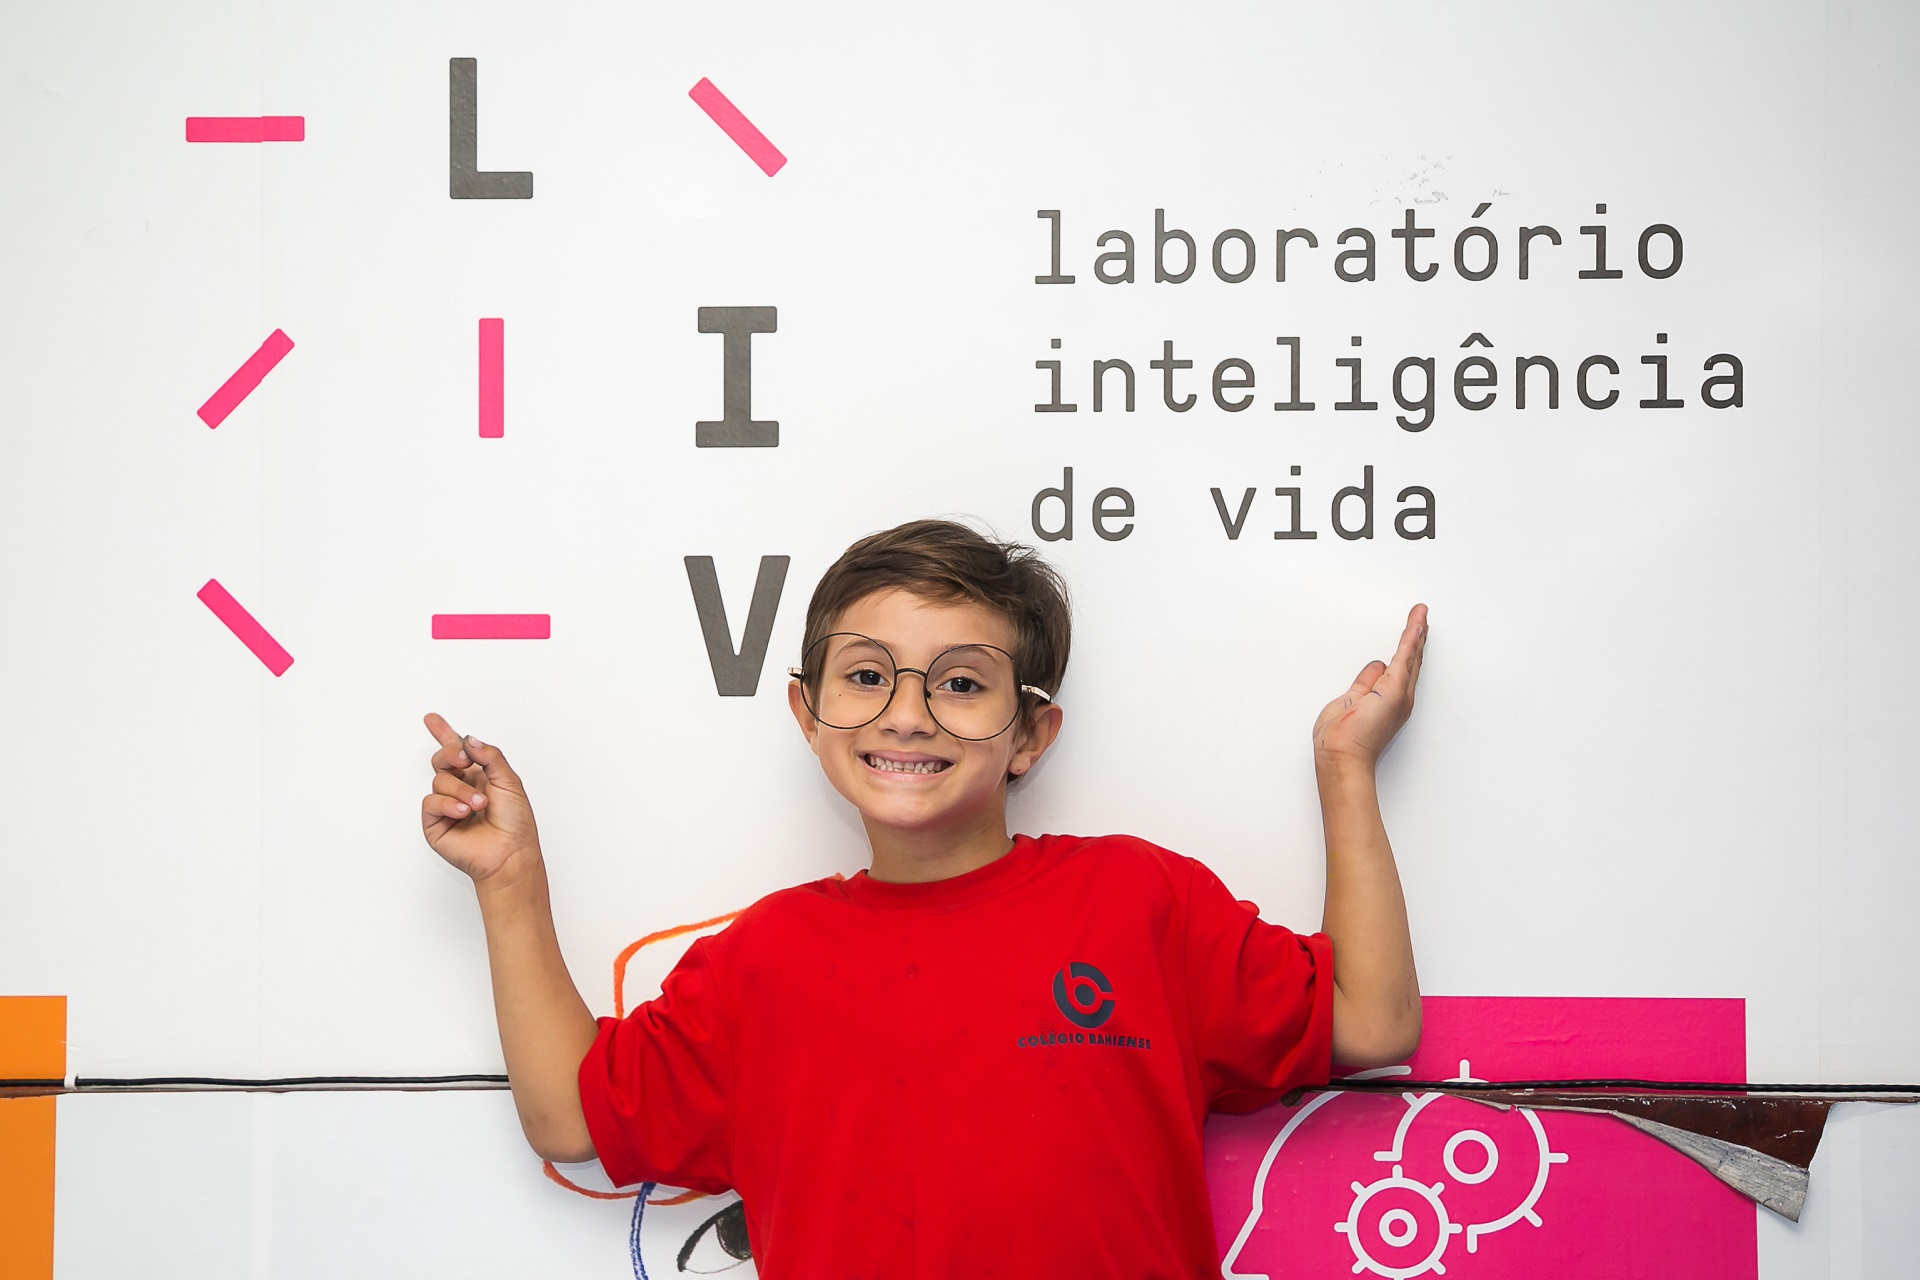 O laboratório inteligência de vida (LIV) ajuda a desenvolver habilidades socioemocionais